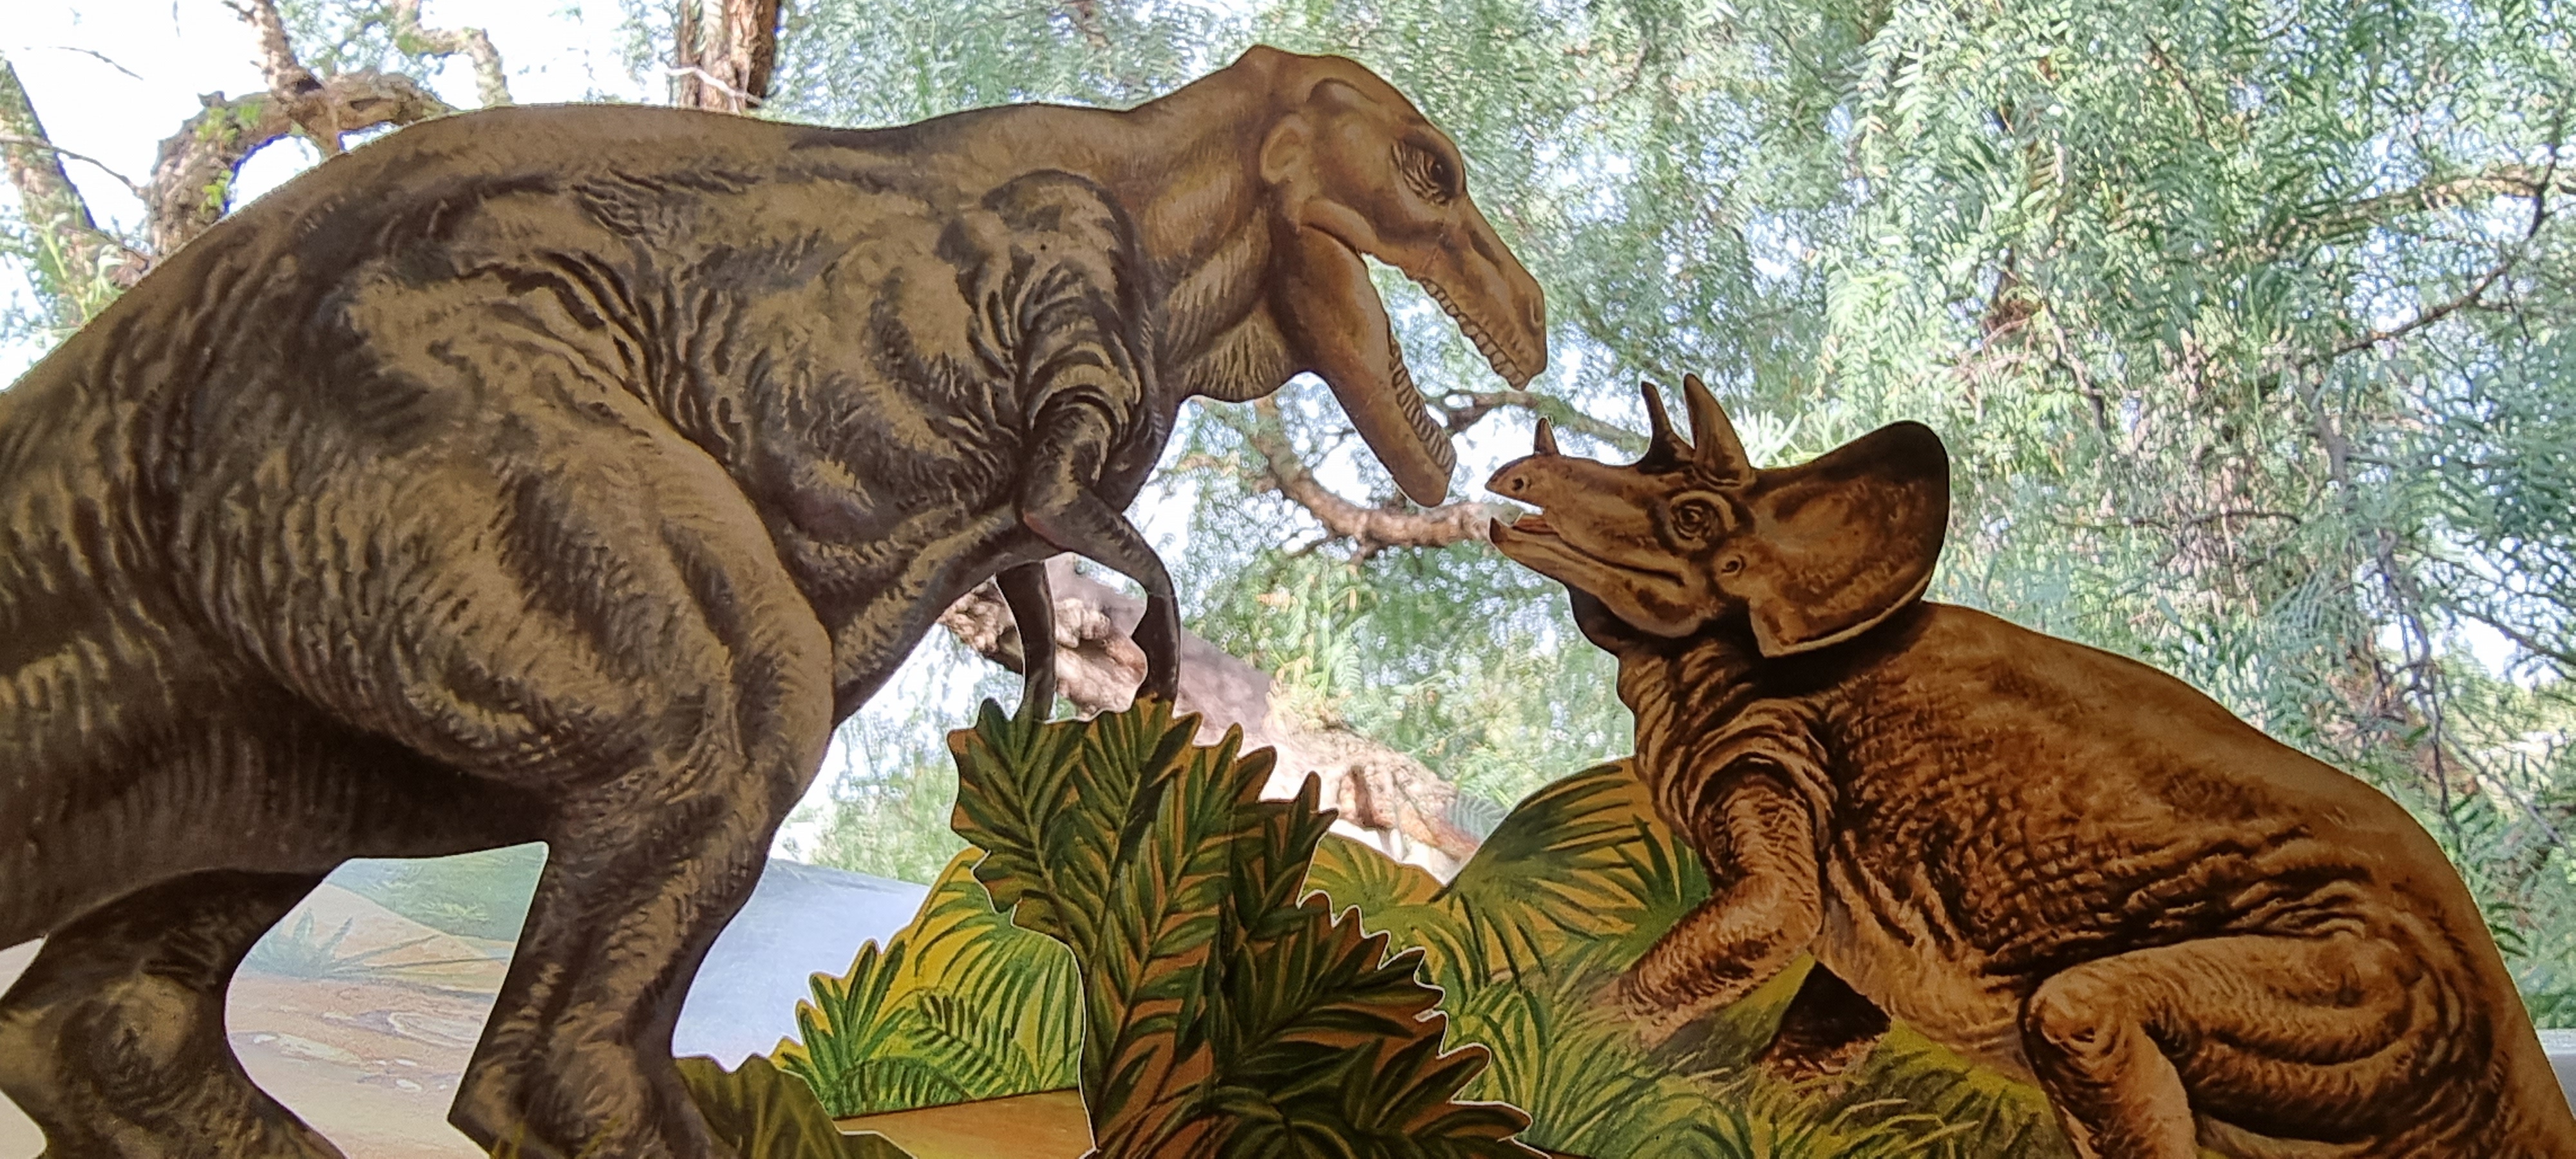 Tyrranosaurus fights Triceratops